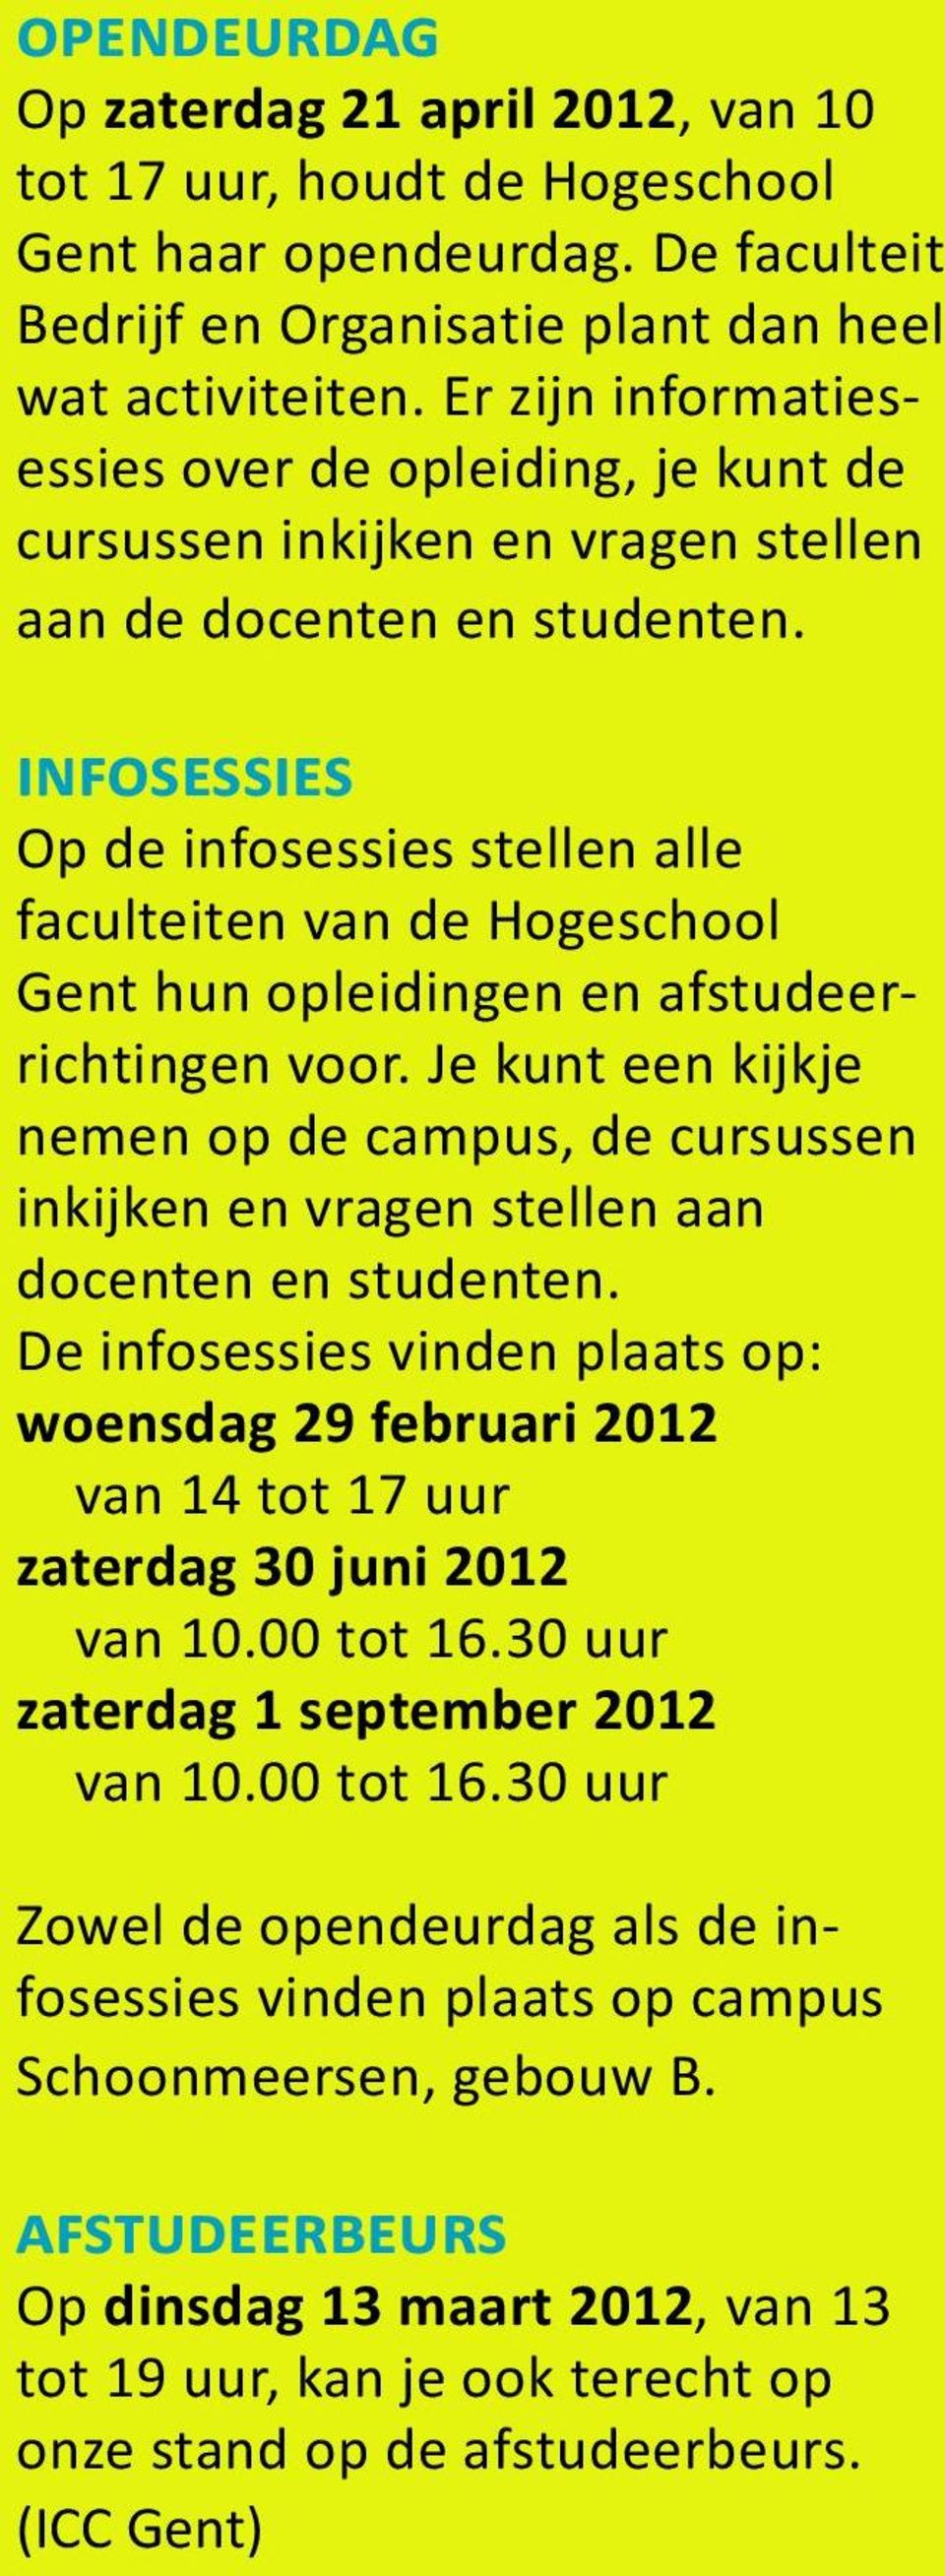 infosessies Op de infosessies stellen alle faculteiten van de Hogeschool Gent hun opleidingen en afstudeerrichtingen voor.